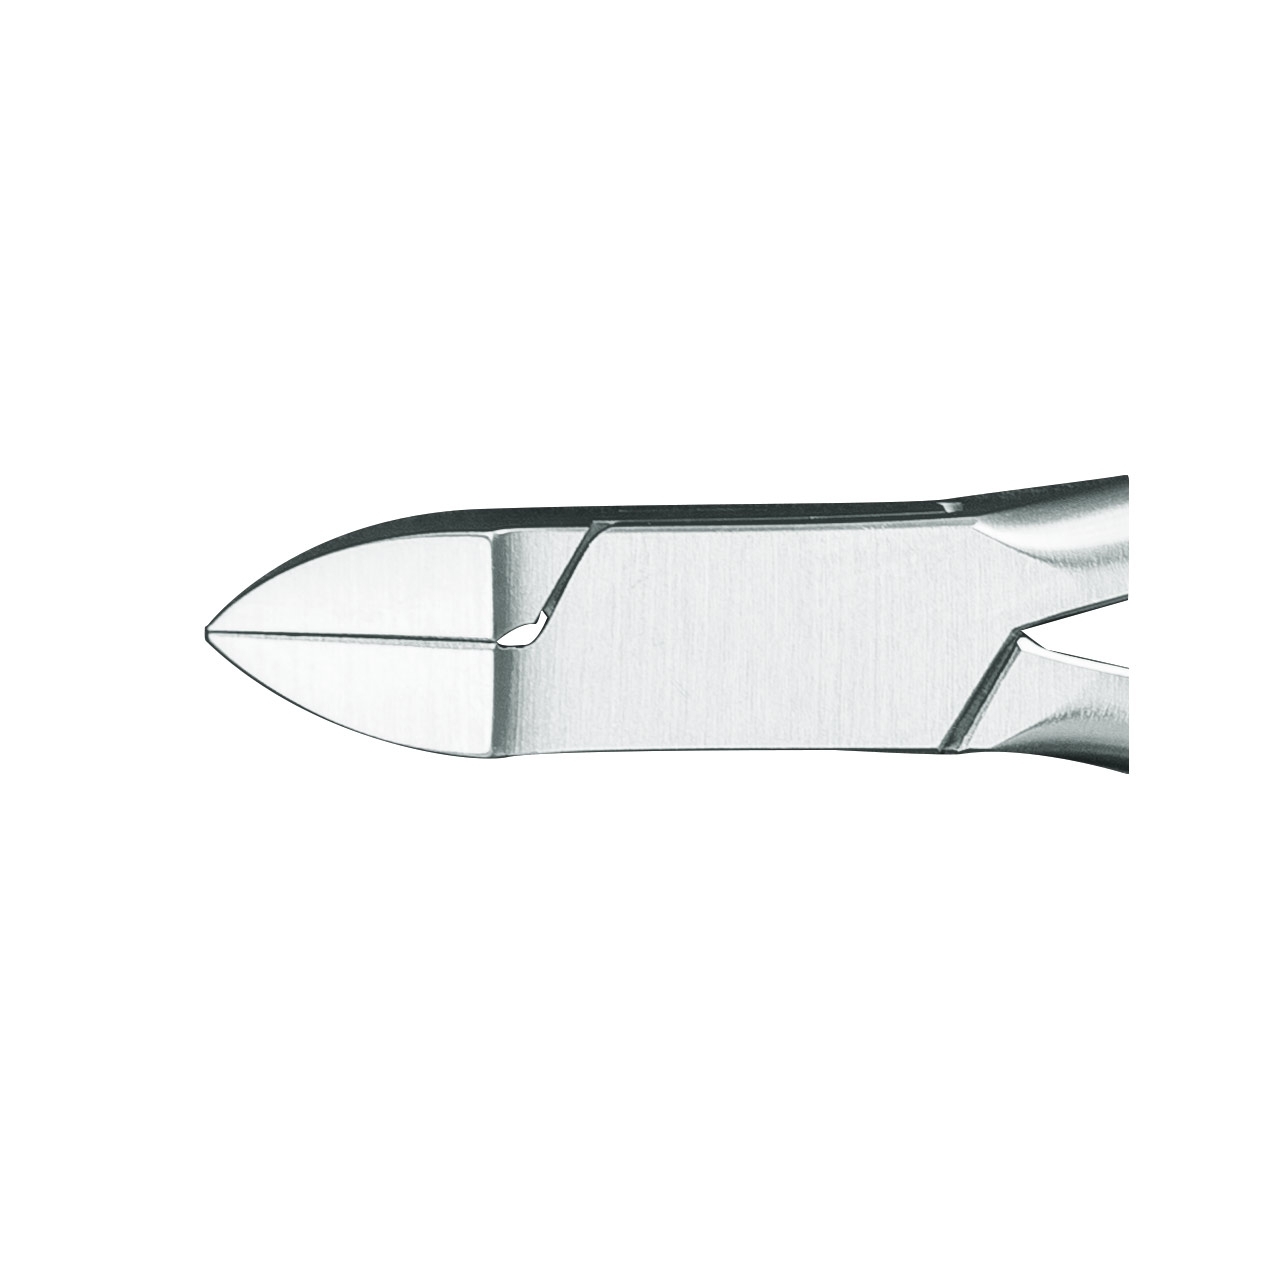 AESCULAP - DP 530 R Seitenschneider mit Hartmetallschneiden, 14 cm, Edelstahl, rostfrei